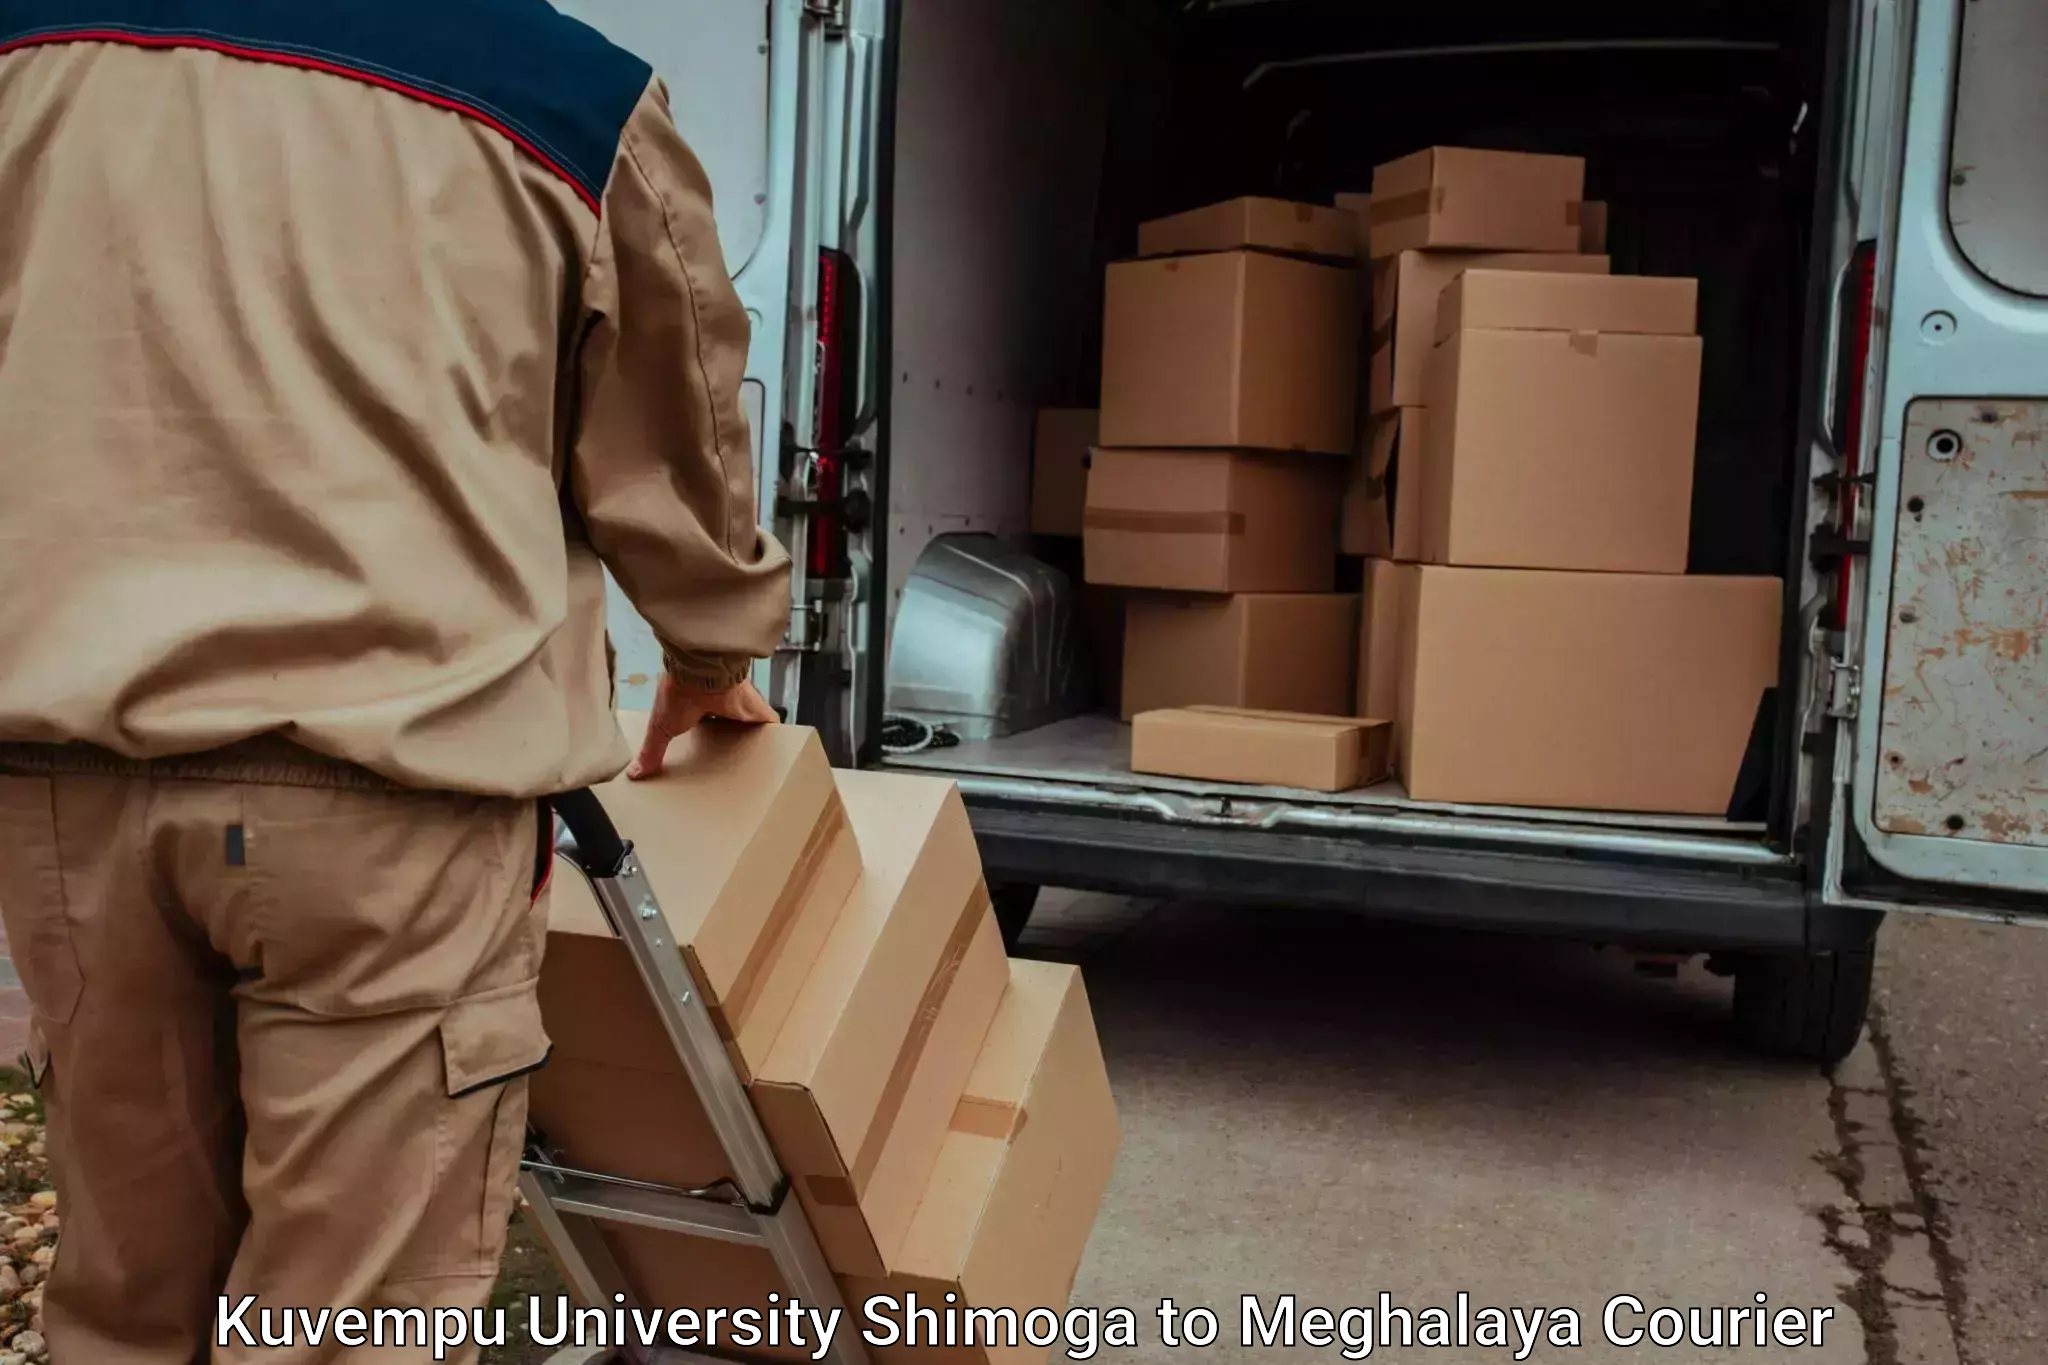 Baggage transport network Kuvempu University Shimoga to NIT Meghalaya